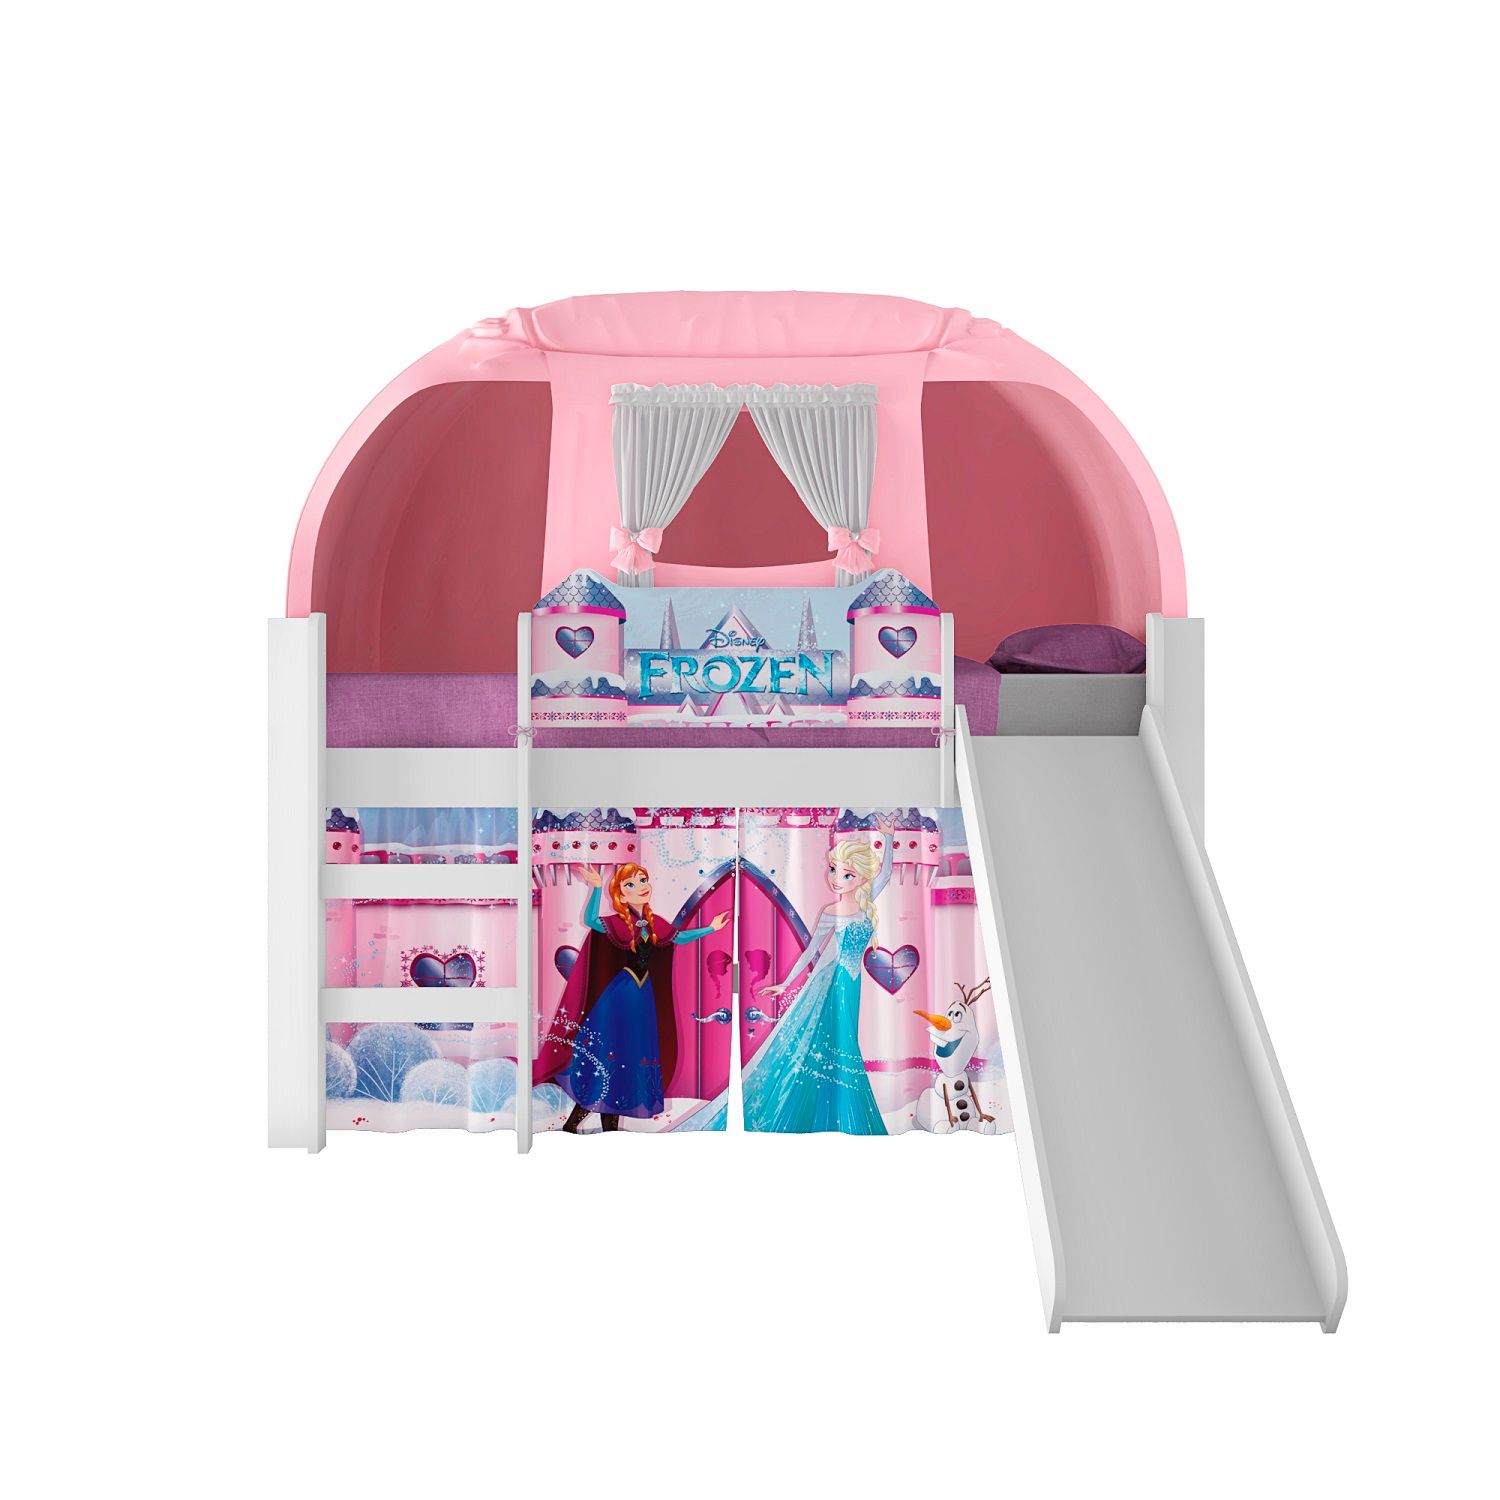 Jamar Colombia - Cama infantil Disney princess FROZEN blanco-rosa! Brillo y  fantasía para las princesitas de la casa :) Todo en un solo diseño!